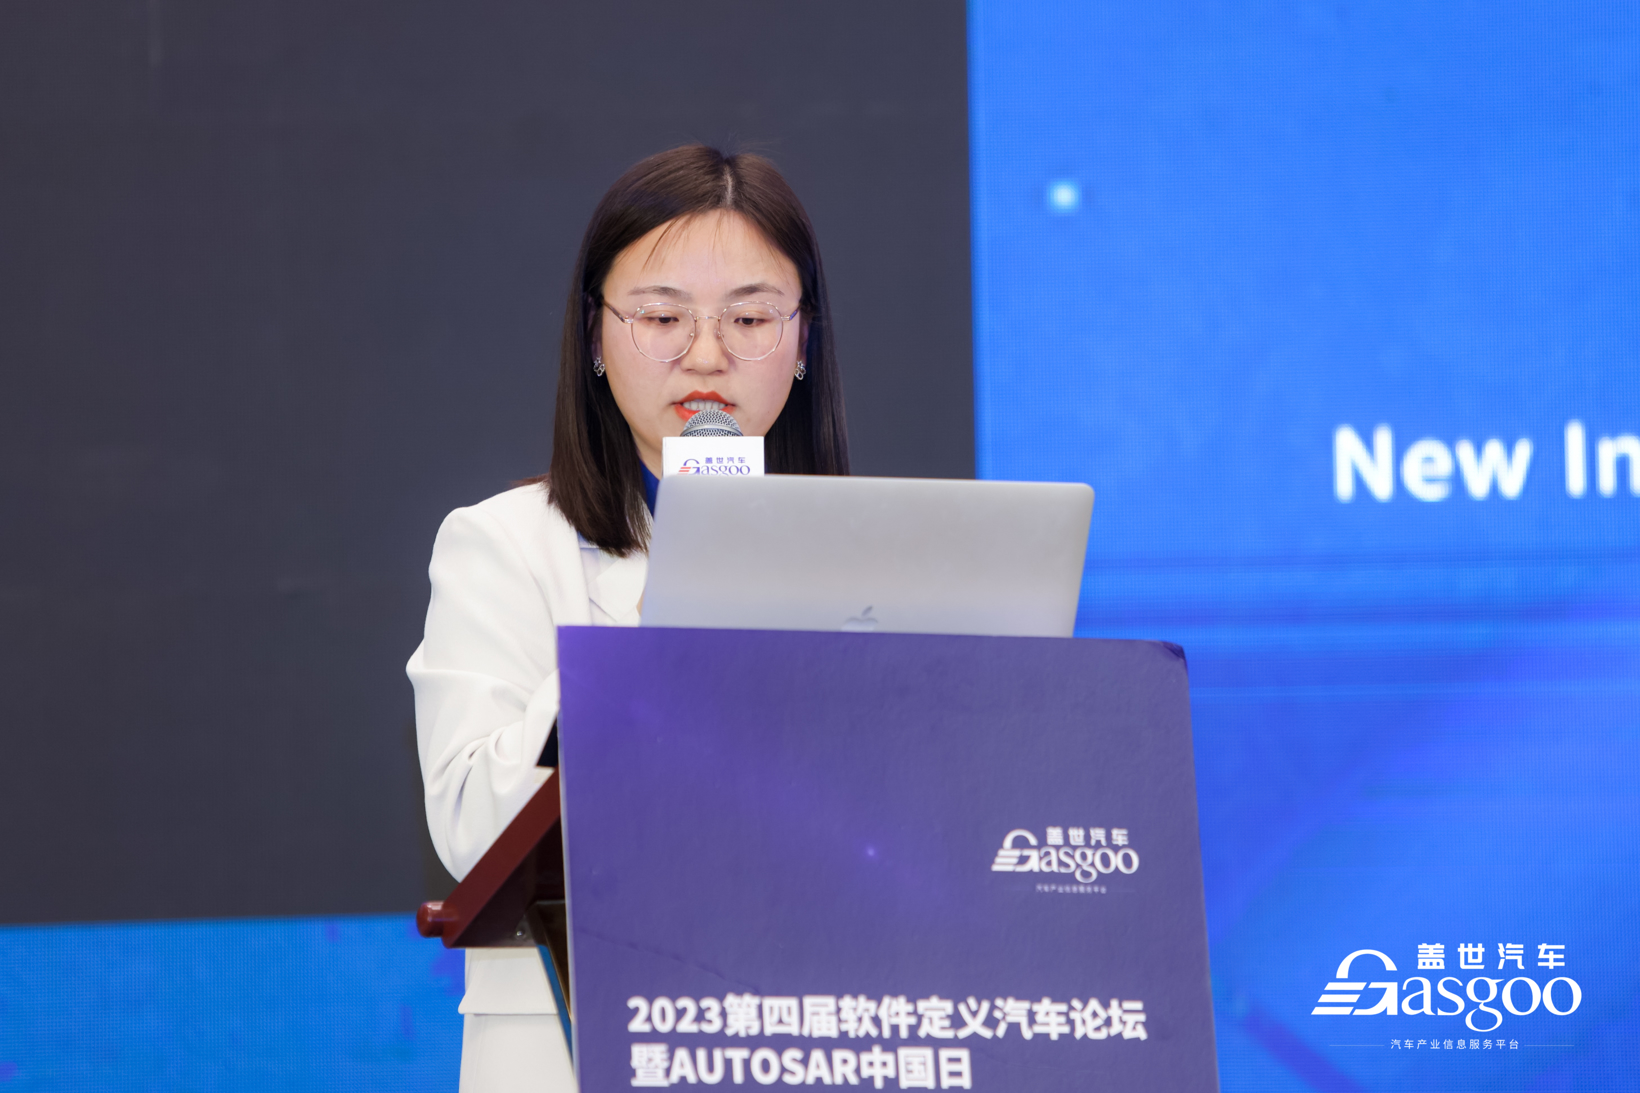 聚焦智能座舱解决方案 | 2023第三届中国汽车人机交互创新大会盛大开幕